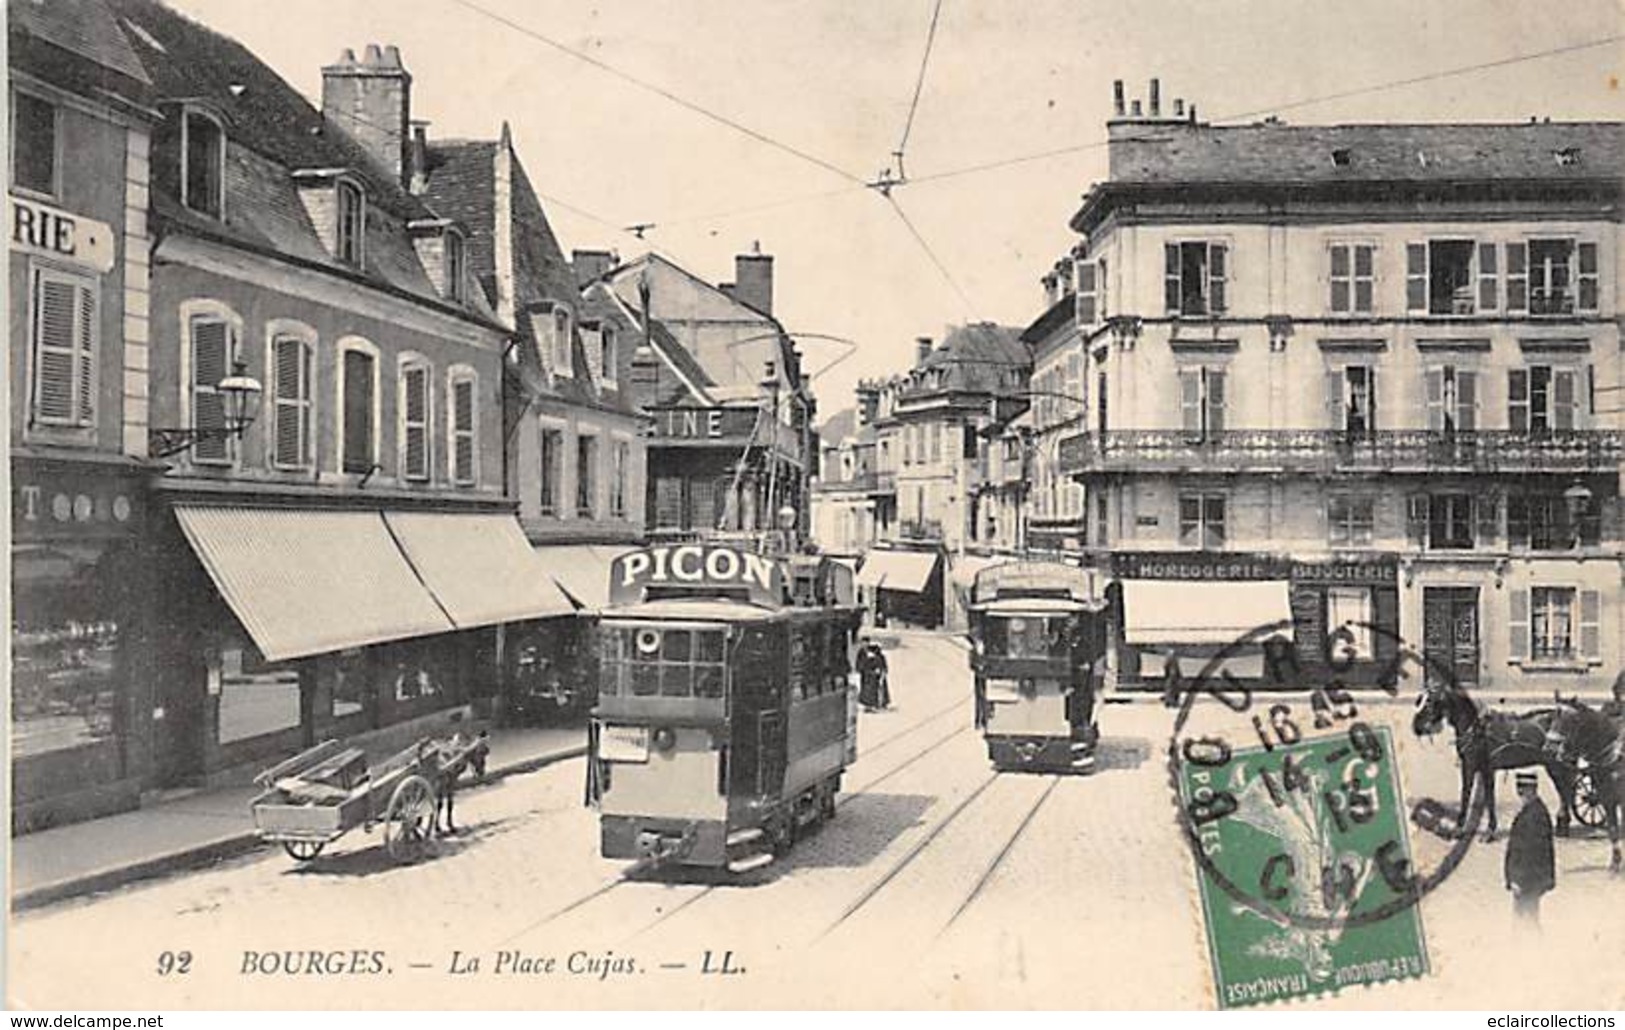 Bourges      18      Lot de 13 cartes  . Autour du thème des tramways.       (voir scan)